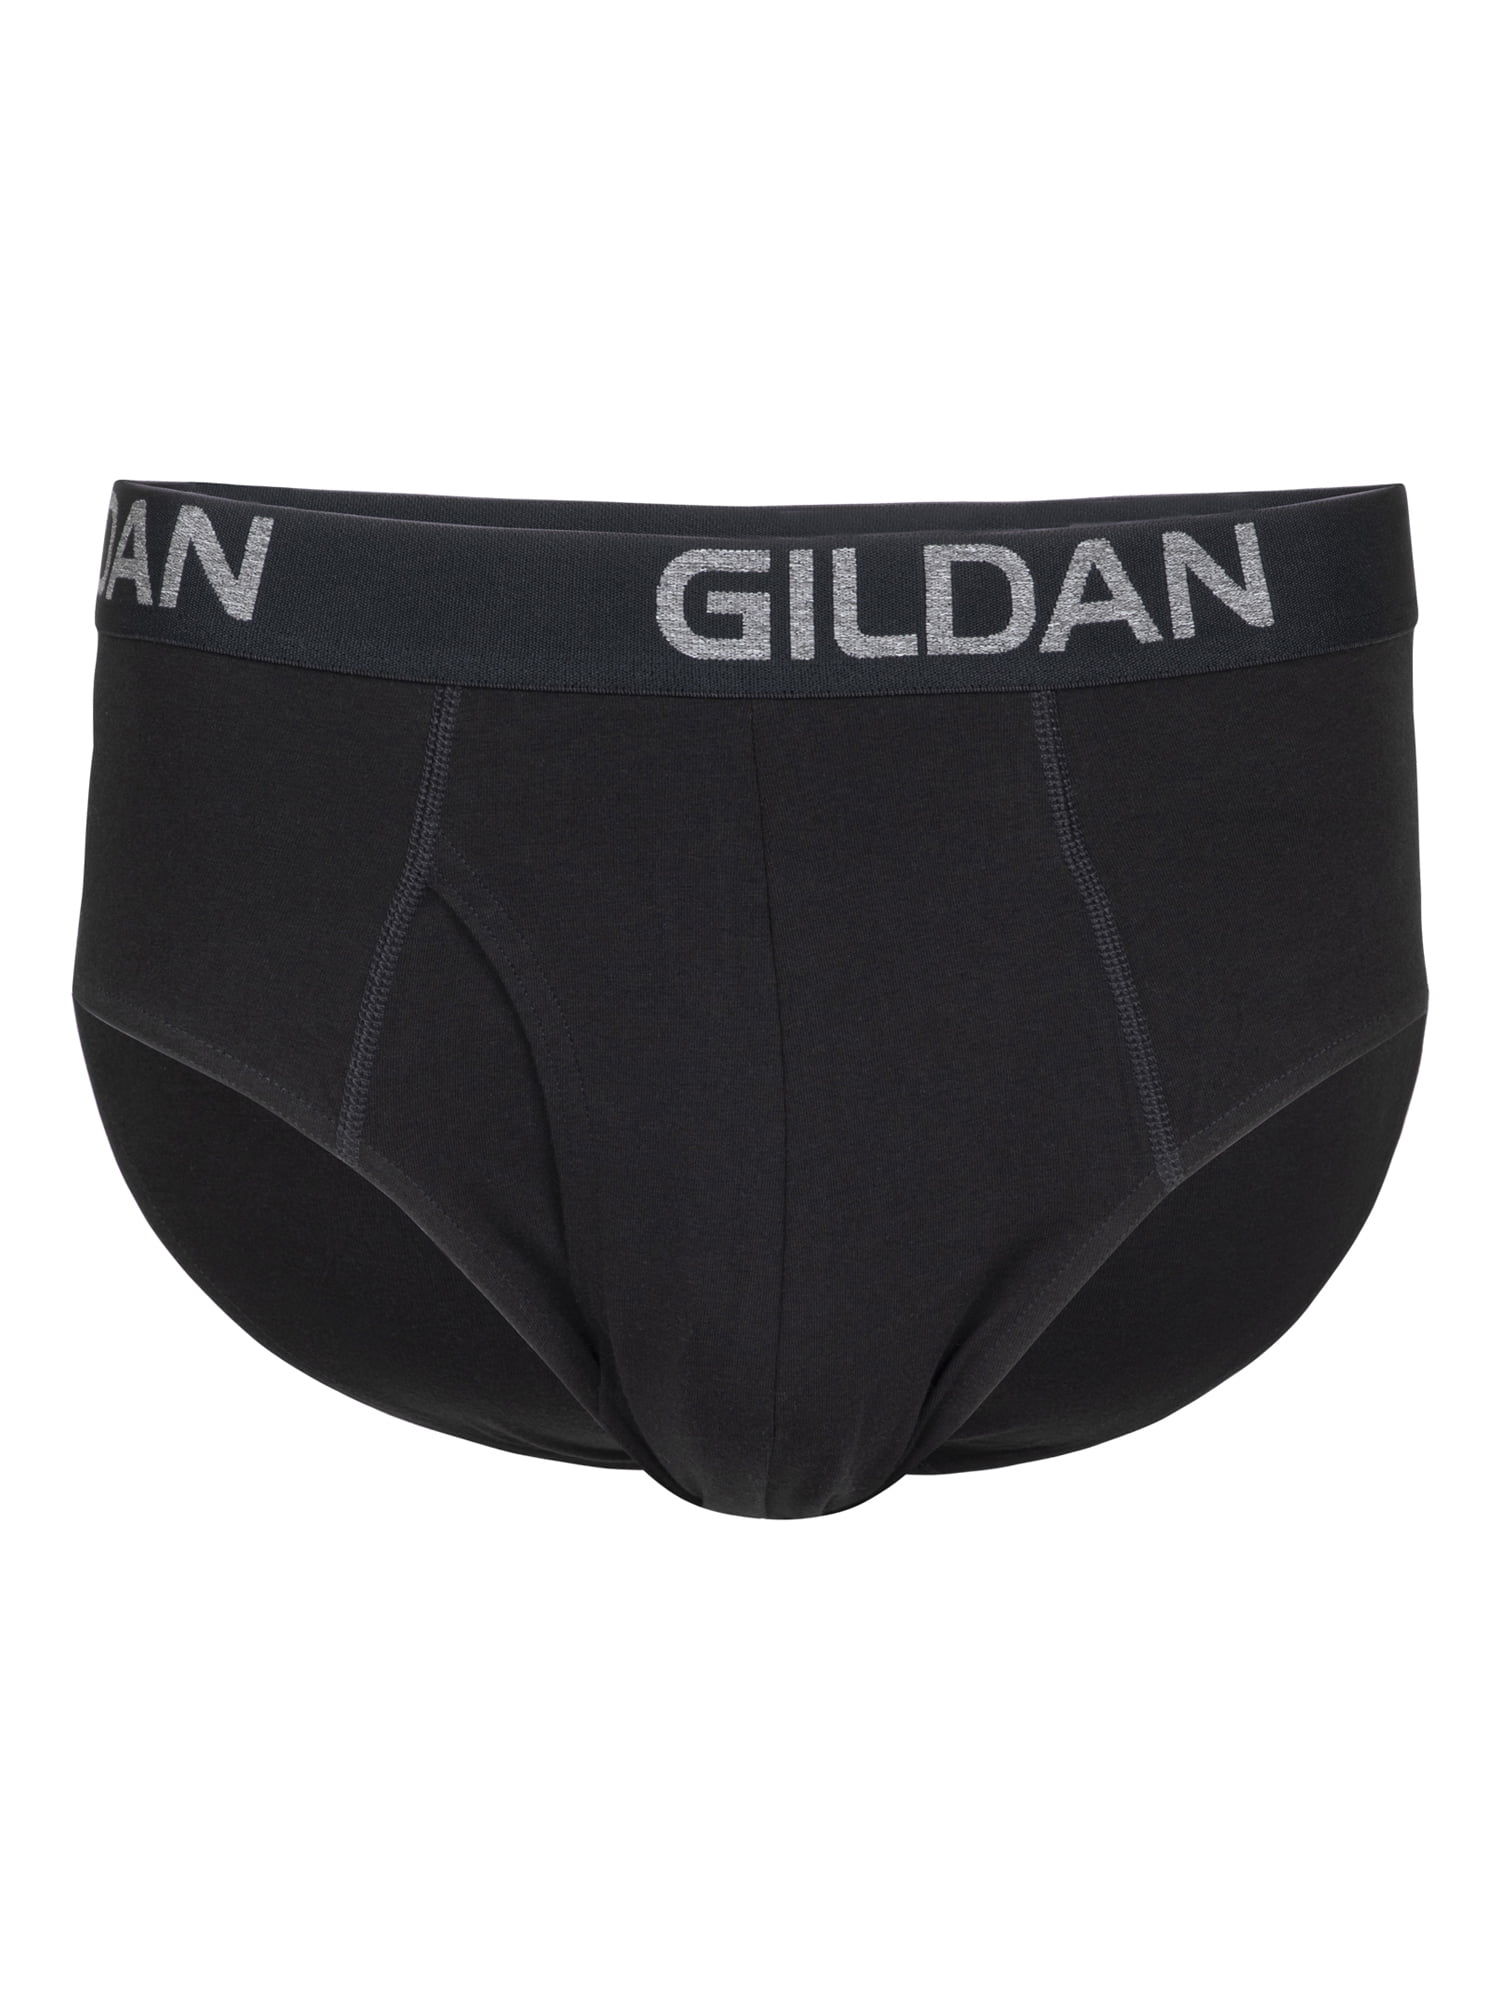 Gildan Black Boxer Briefs Spandex/cotton/poly Blend Large